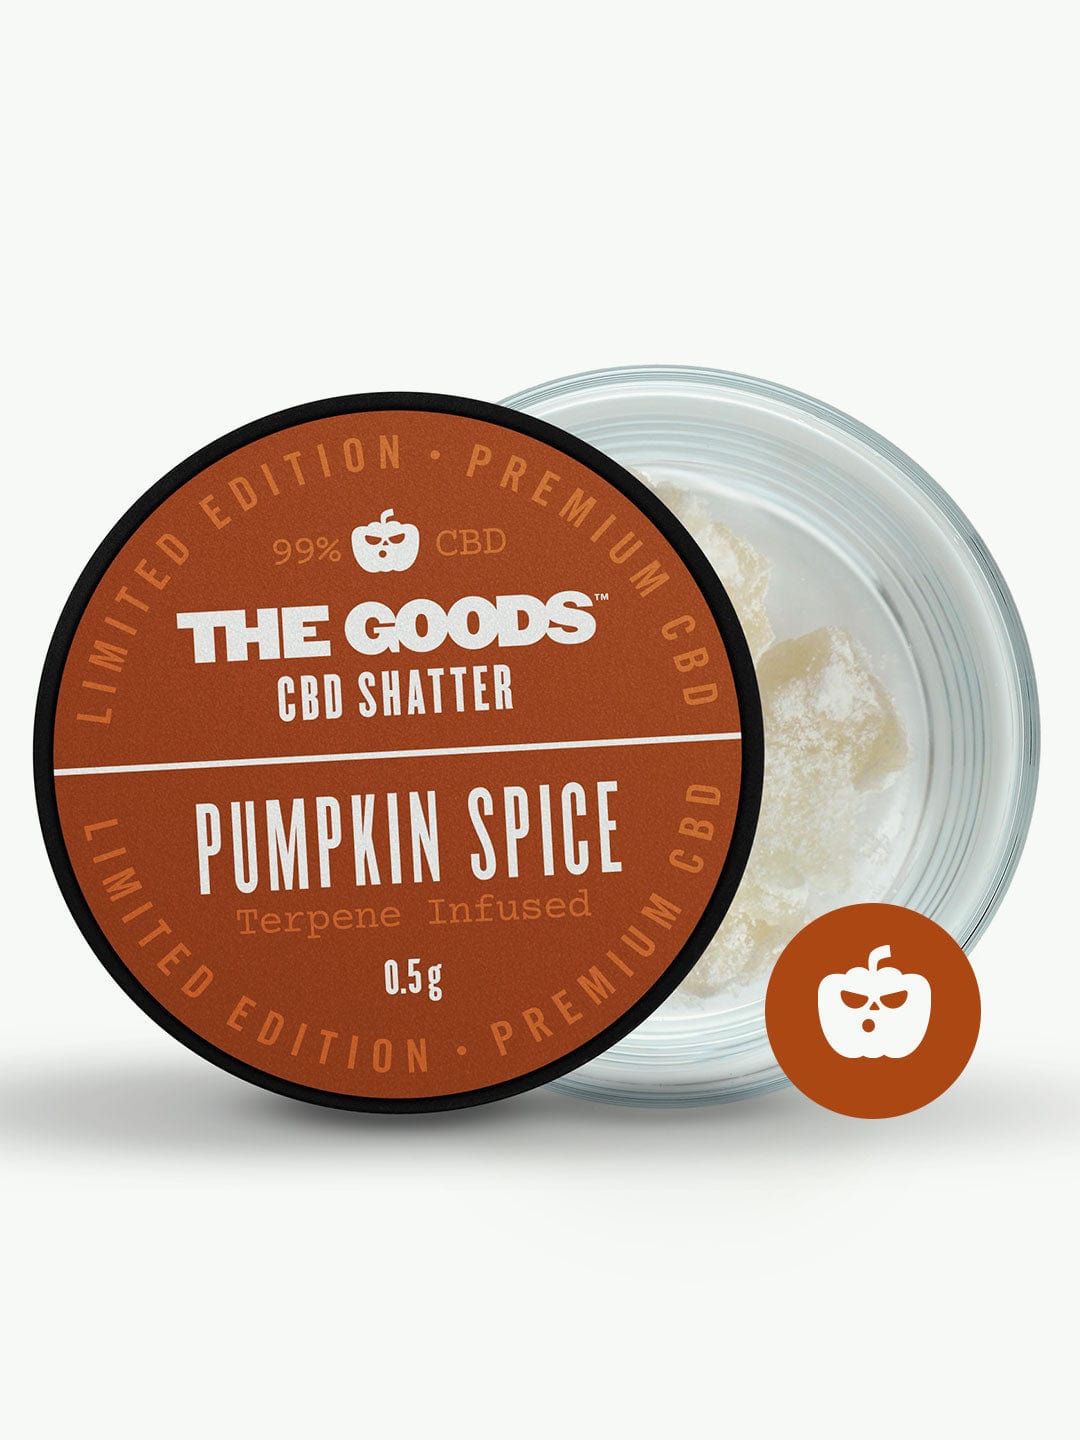 the goods pumpkin spice cbd shatter